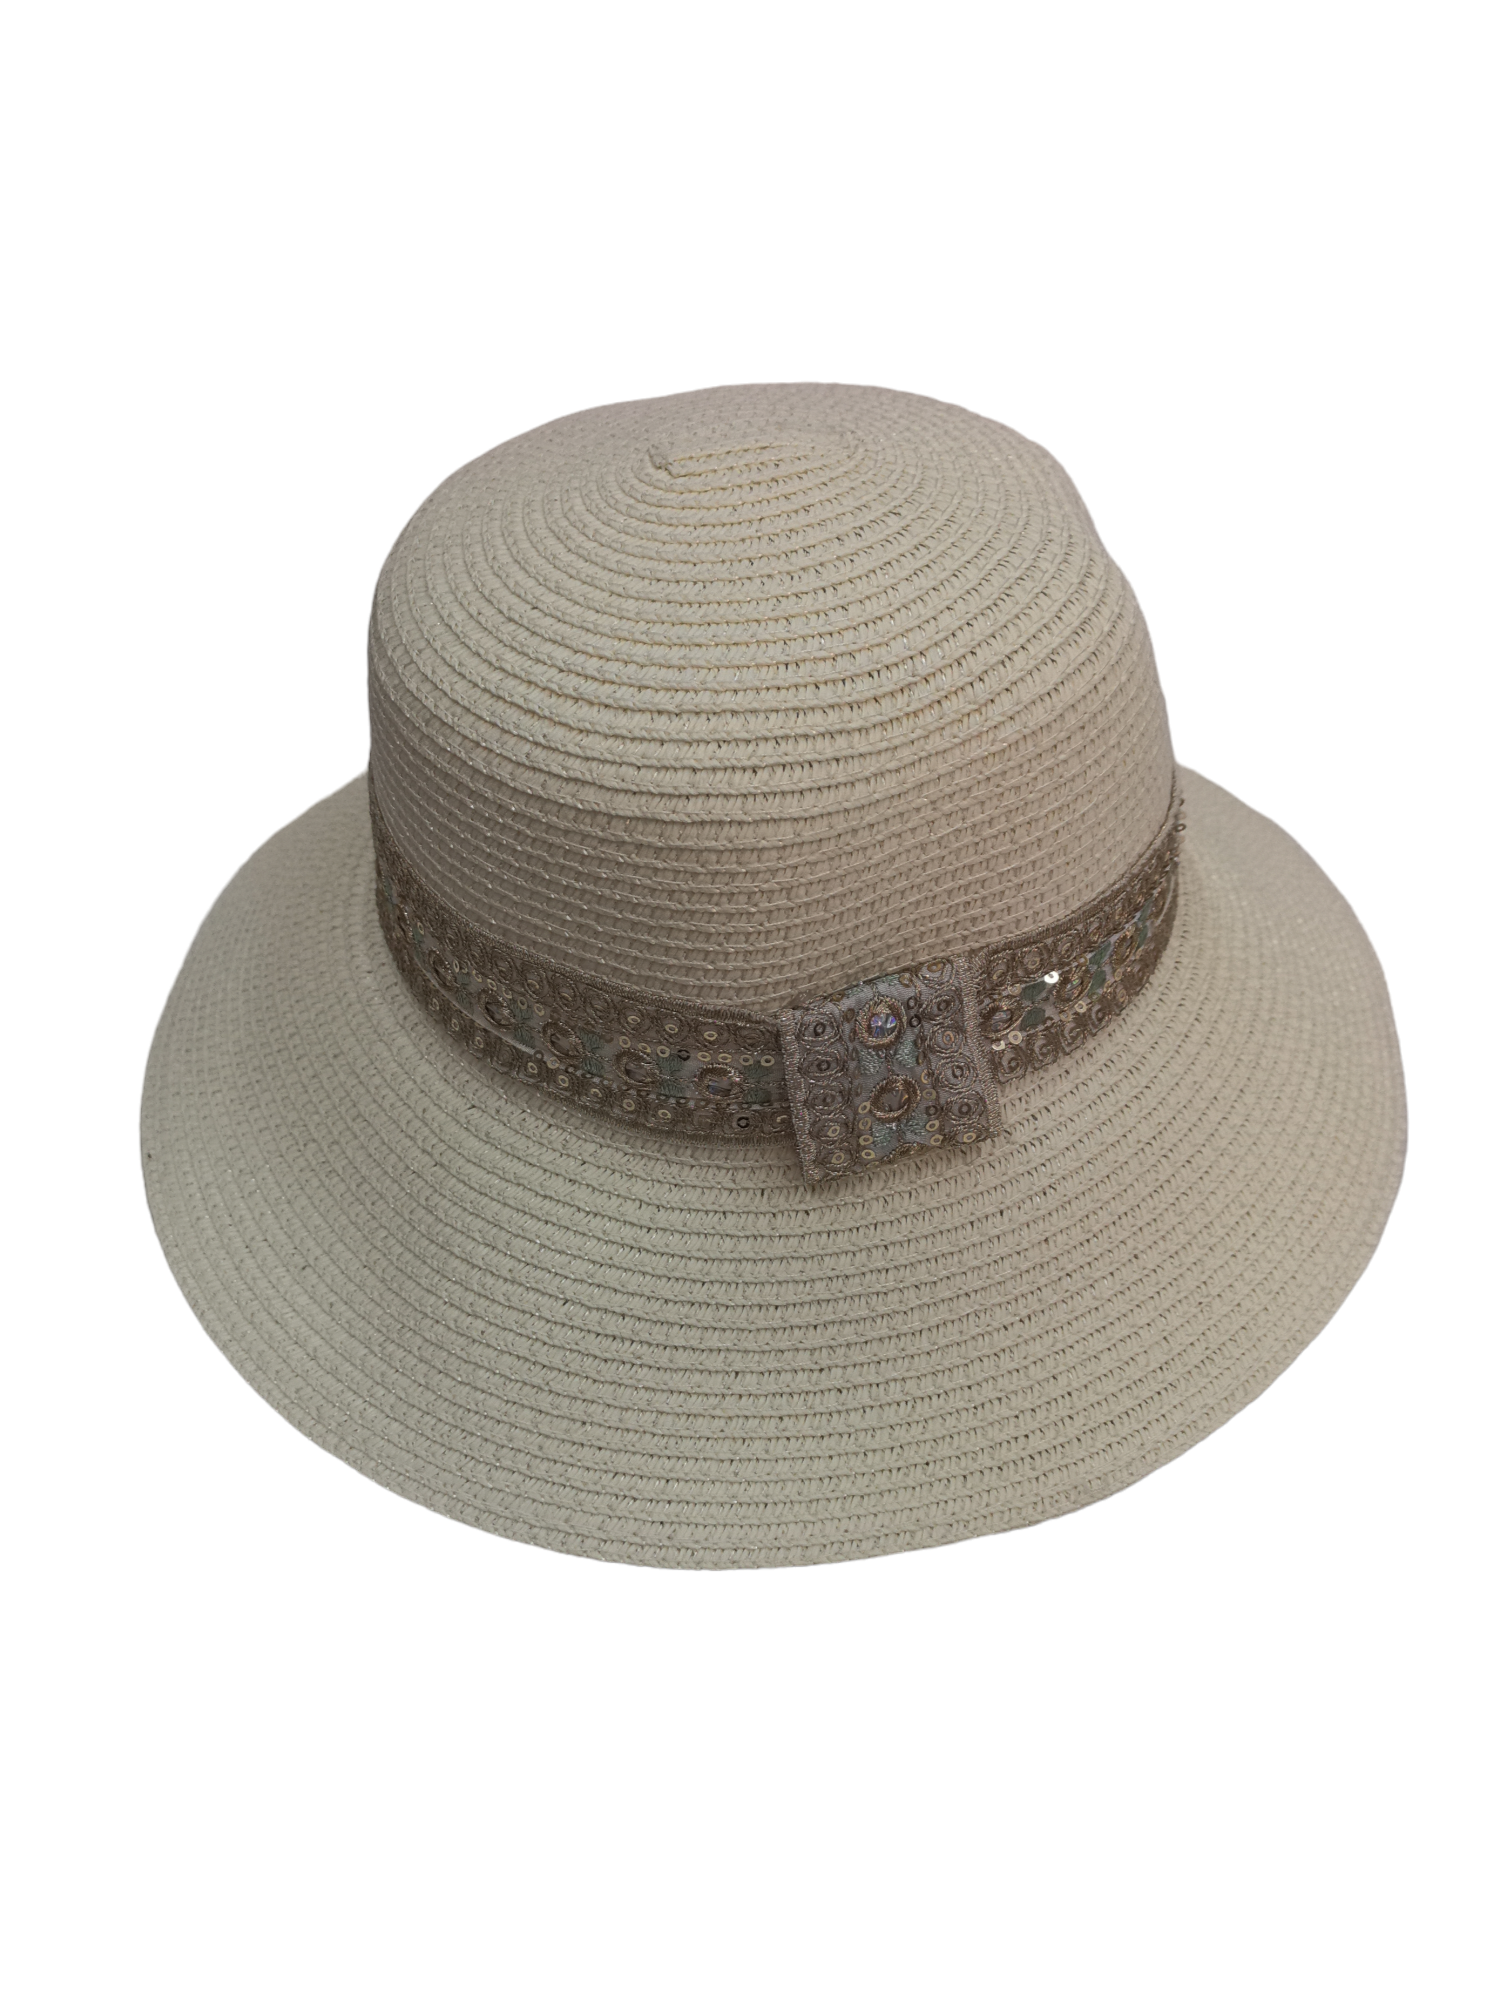 Chapeau de paille femme ruban Paillettes (x12)